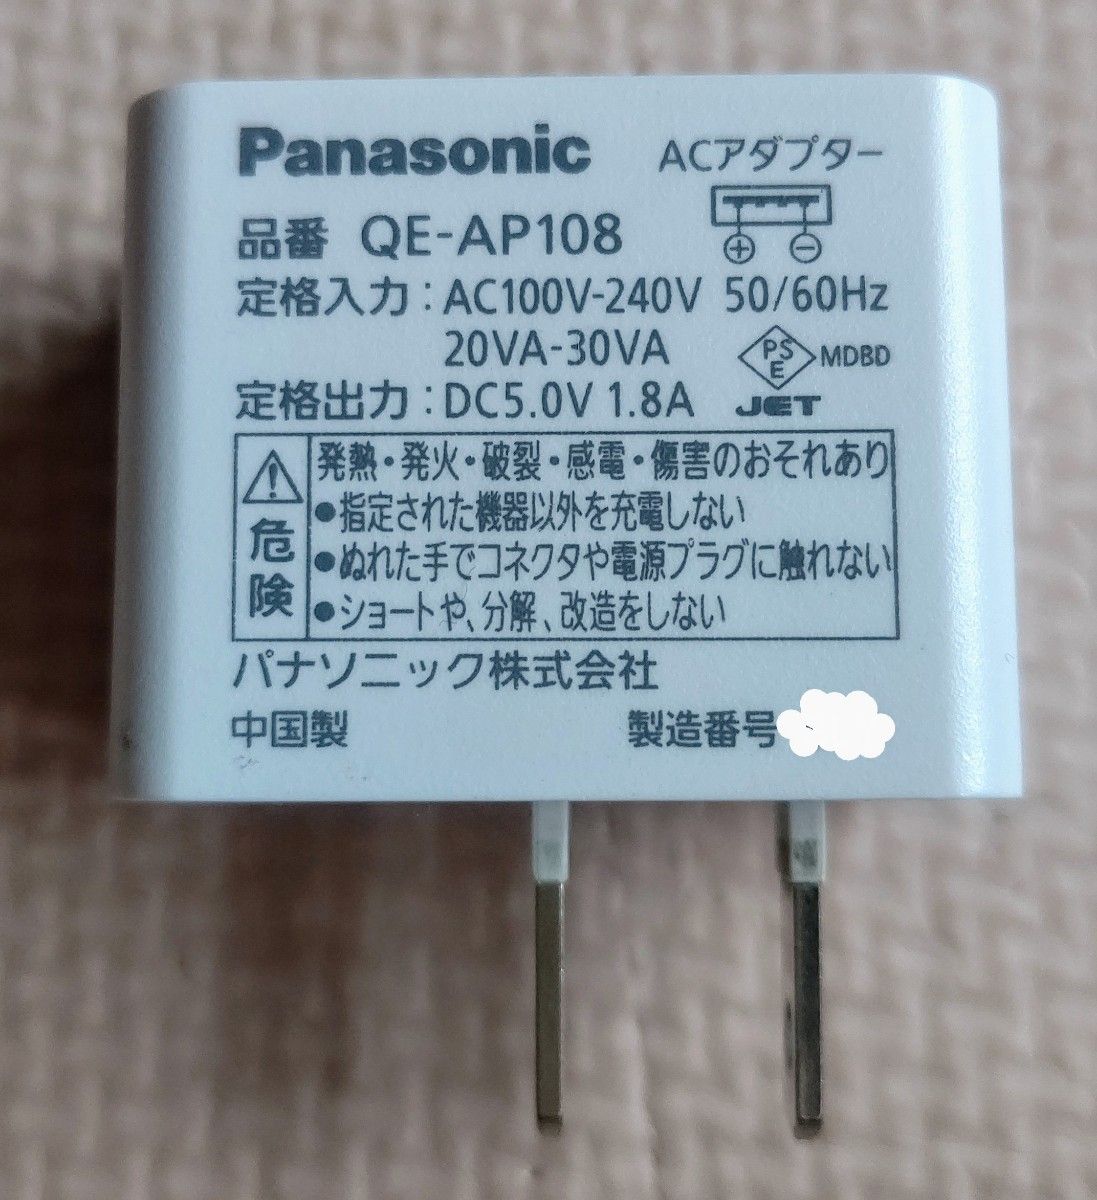 USB出力 ACアダプター QE-AP108 USBモバイル電源 パナソニック 出力1.8A ホワイト ②